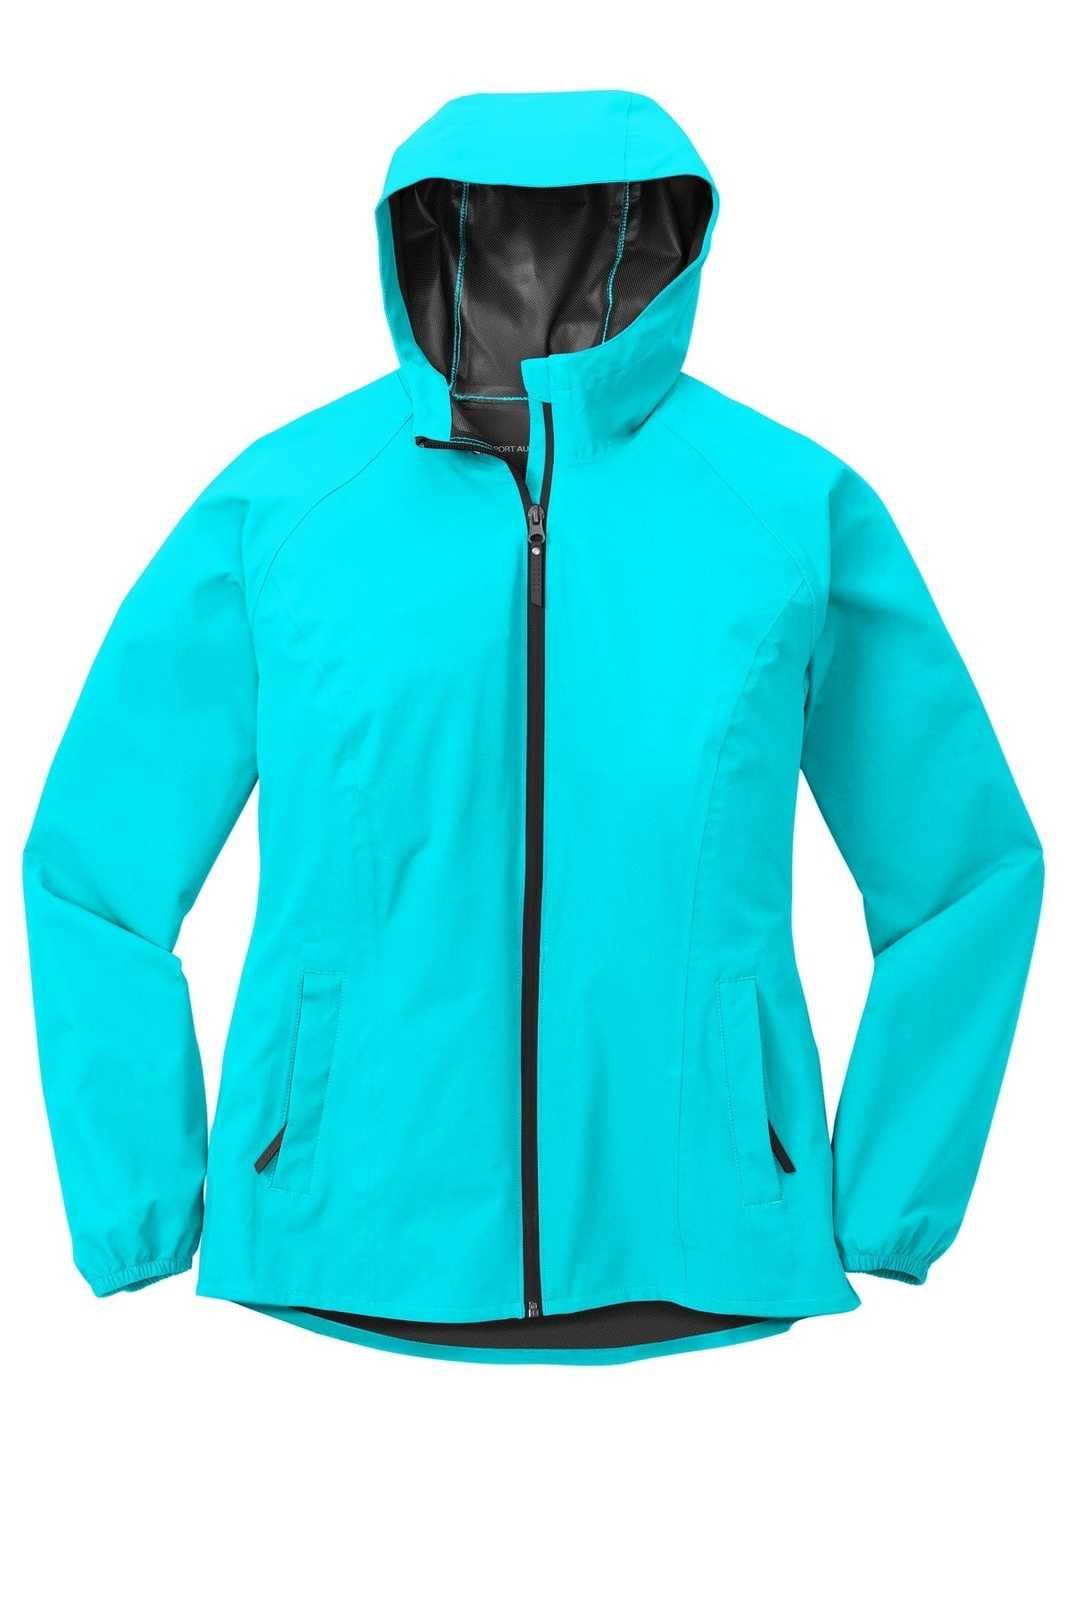 Port Authority L407 Ladies Essential Rain Jacket - Light Cyan Blue - HIT a Double - 5